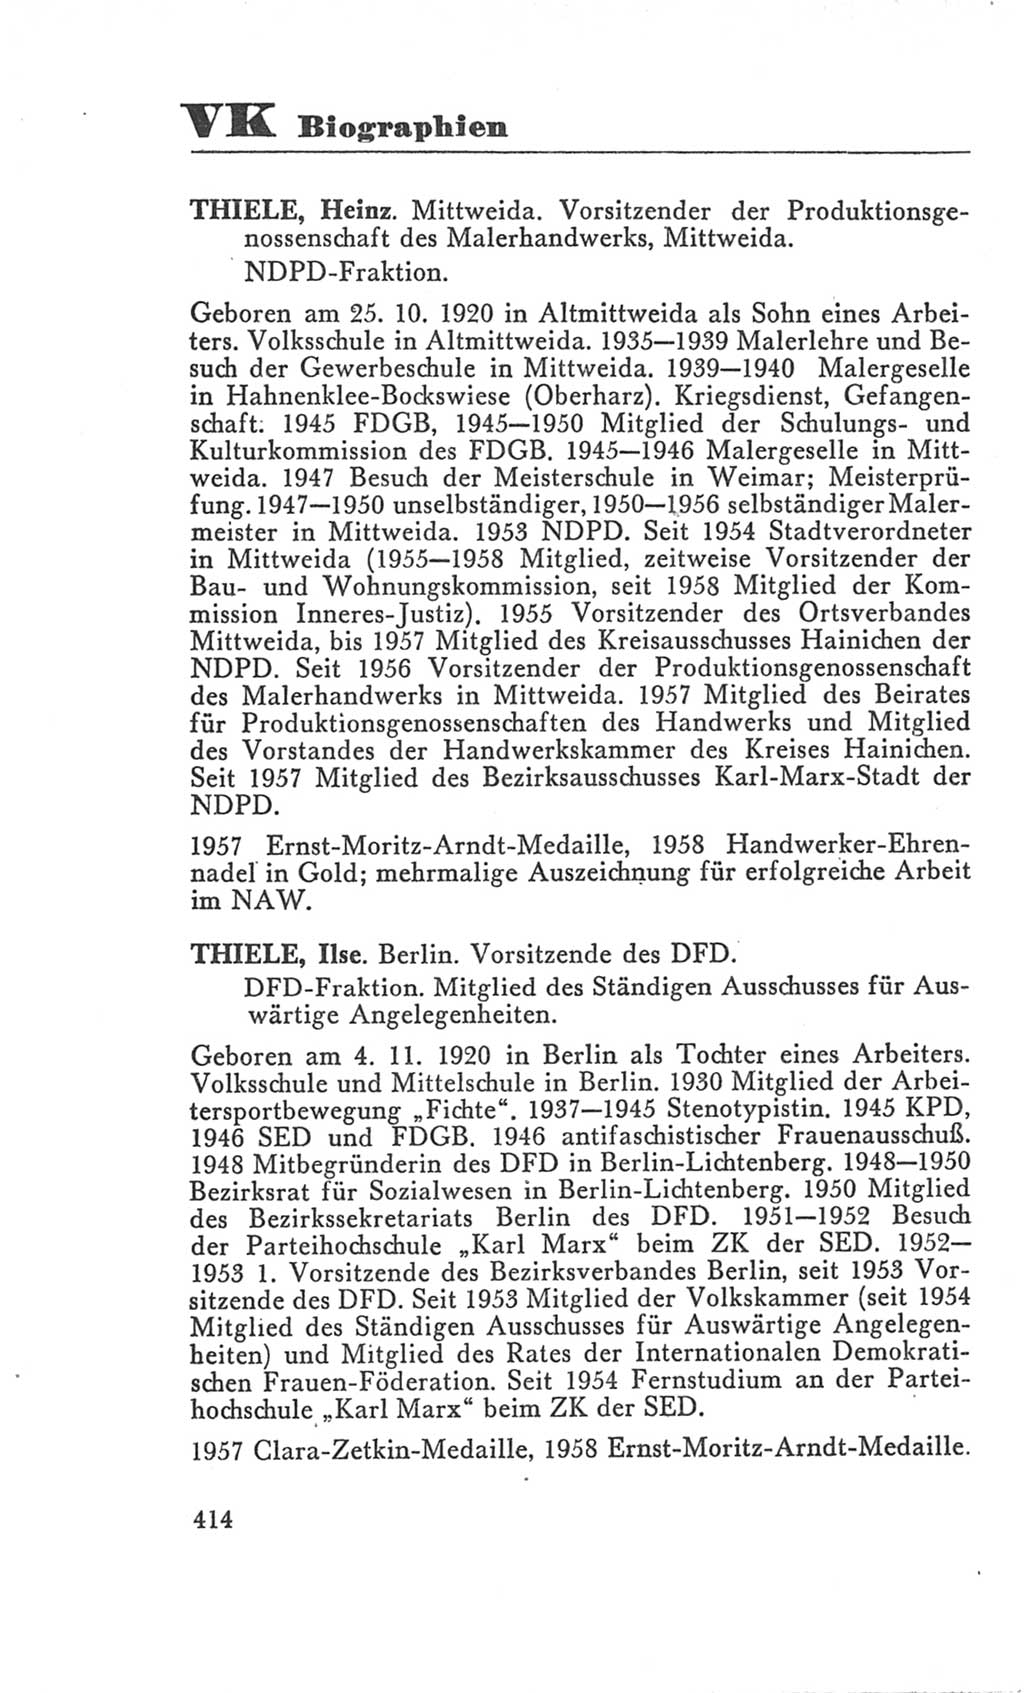 Handbuch der Volkskammer (VK) der Deutschen Demokratischen Republik (DDR), 3. Wahlperiode 1958-1963, Seite 414 (Hdb. VK. DDR 3. WP. 1958-1963, S. 414)